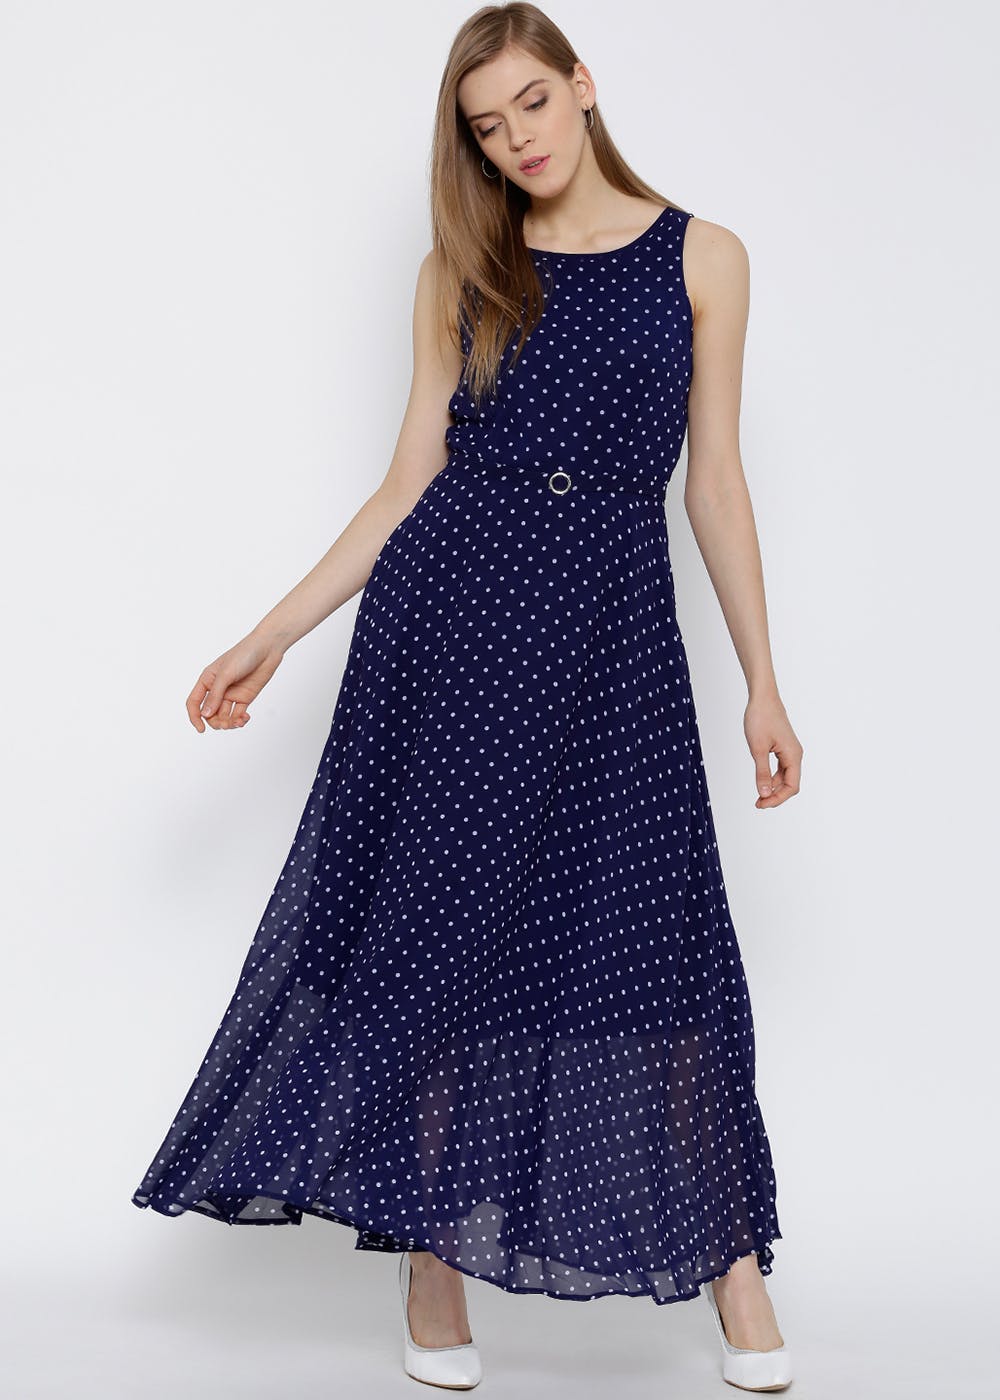 Polka Dots Printed Sleeveless Solid Maxi Dress - Navy